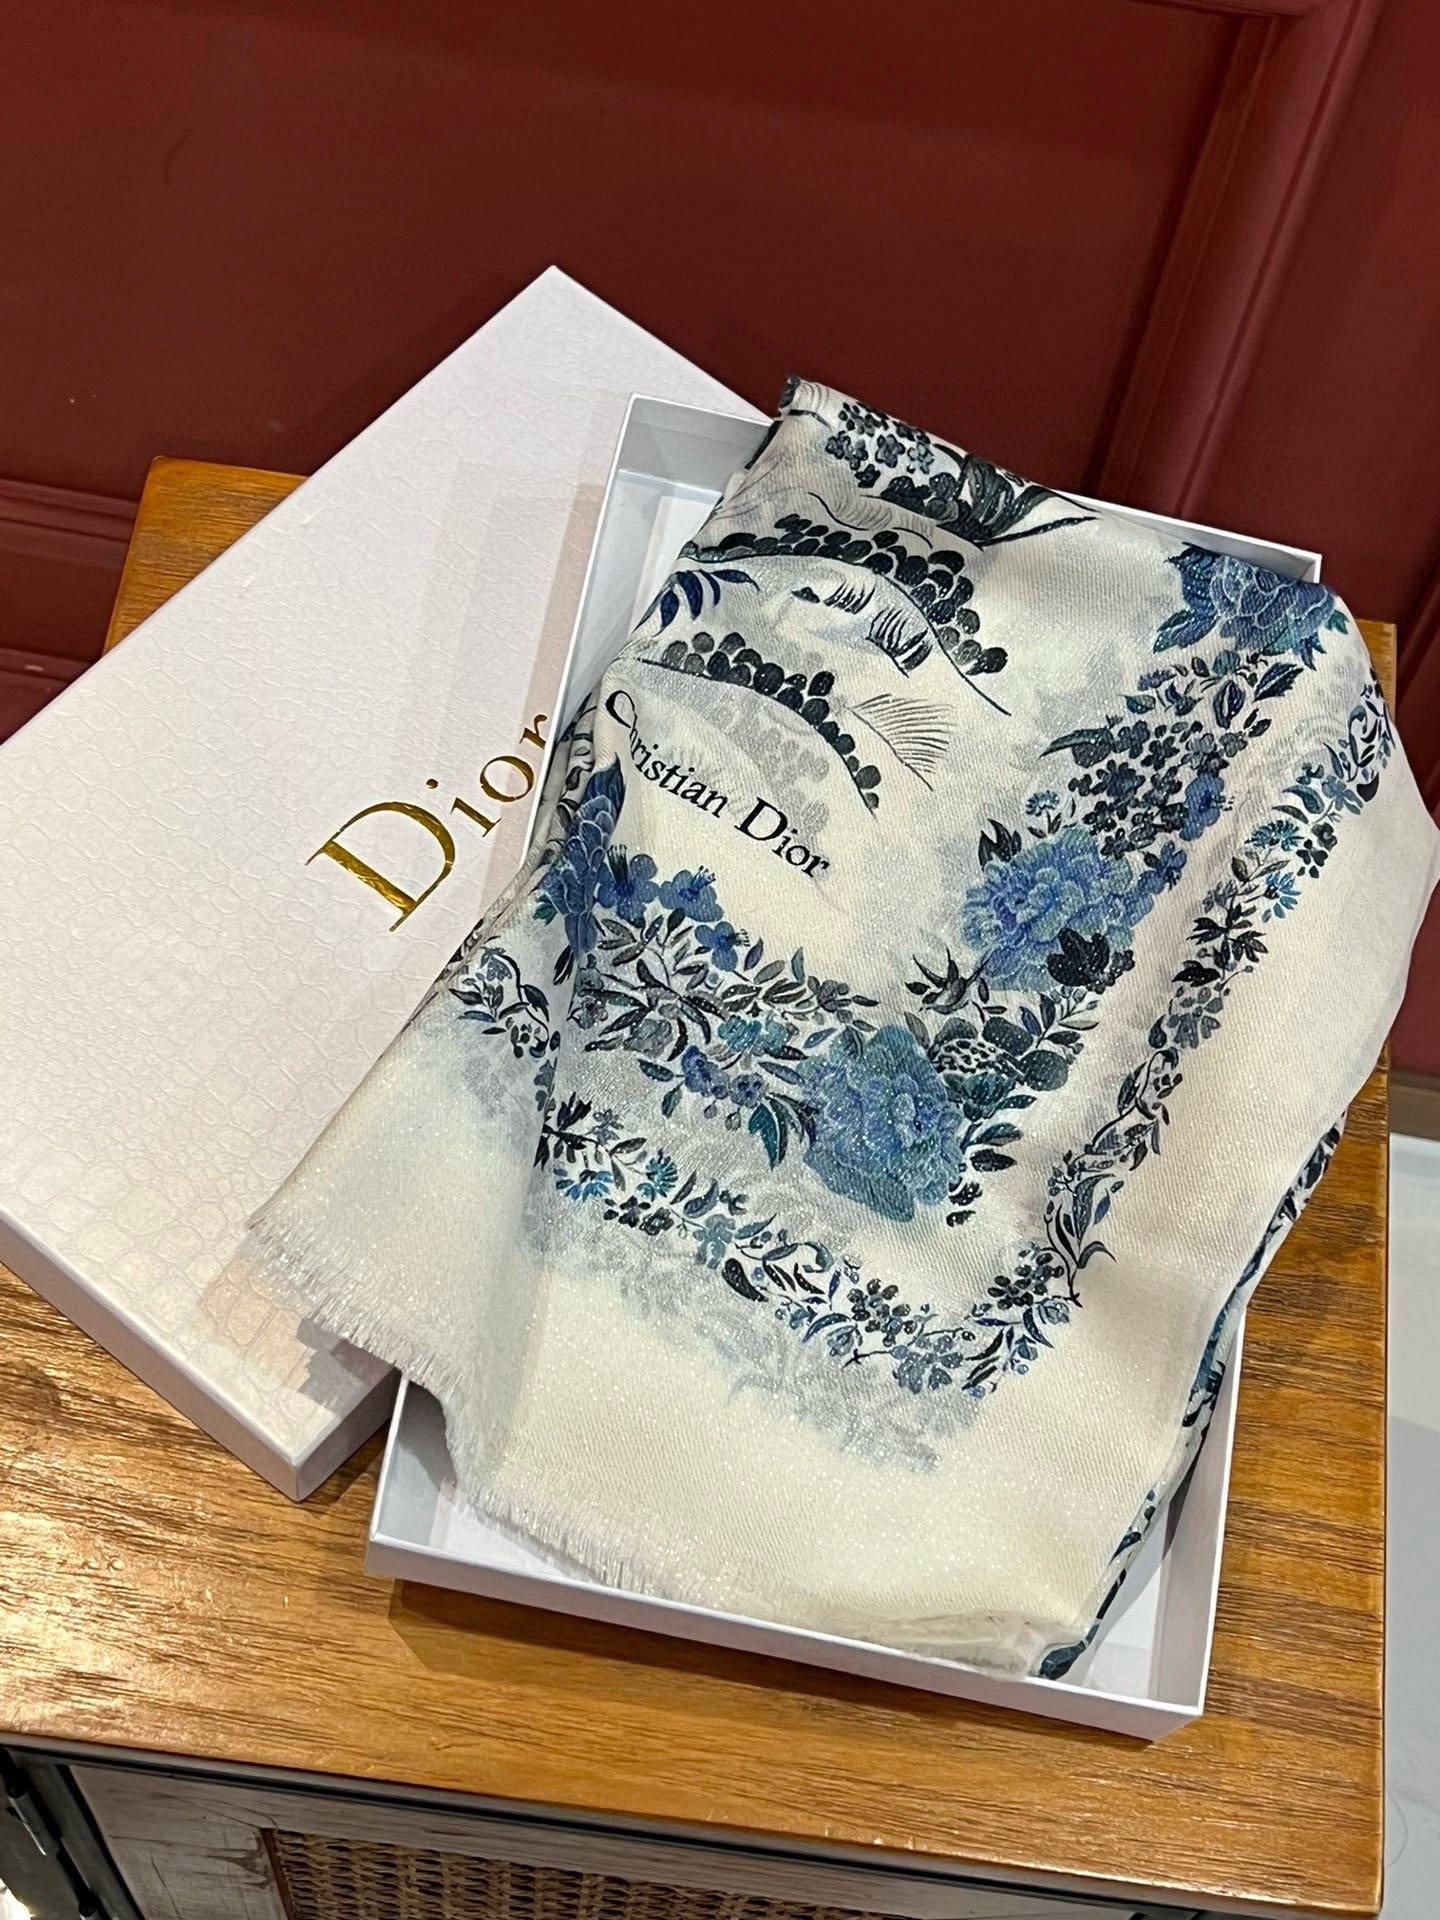 金银丝款Dior专柜款就是告诉大家这款必须收上新️新款长羊绒专柜同步这个size不大不小特别好搭配品质超